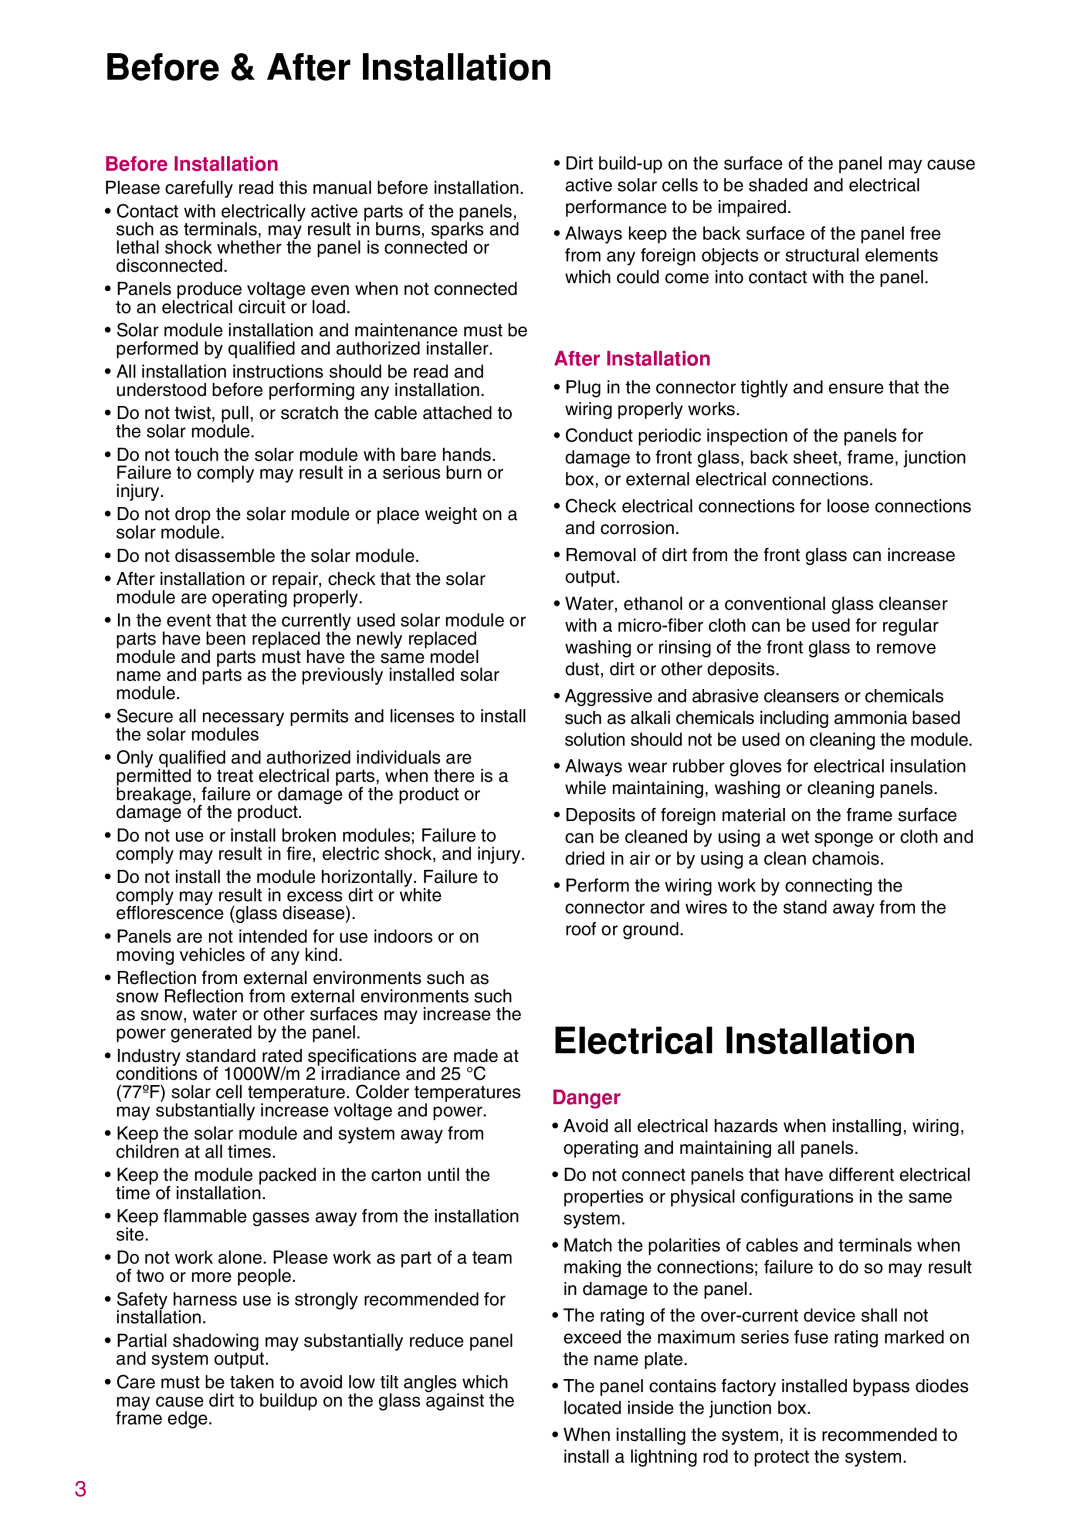 LG Electronics K)-A3, K)-B3, LGXXXN1C(W Before & After Installation, Electrical Installation, Before Installation, Danger 